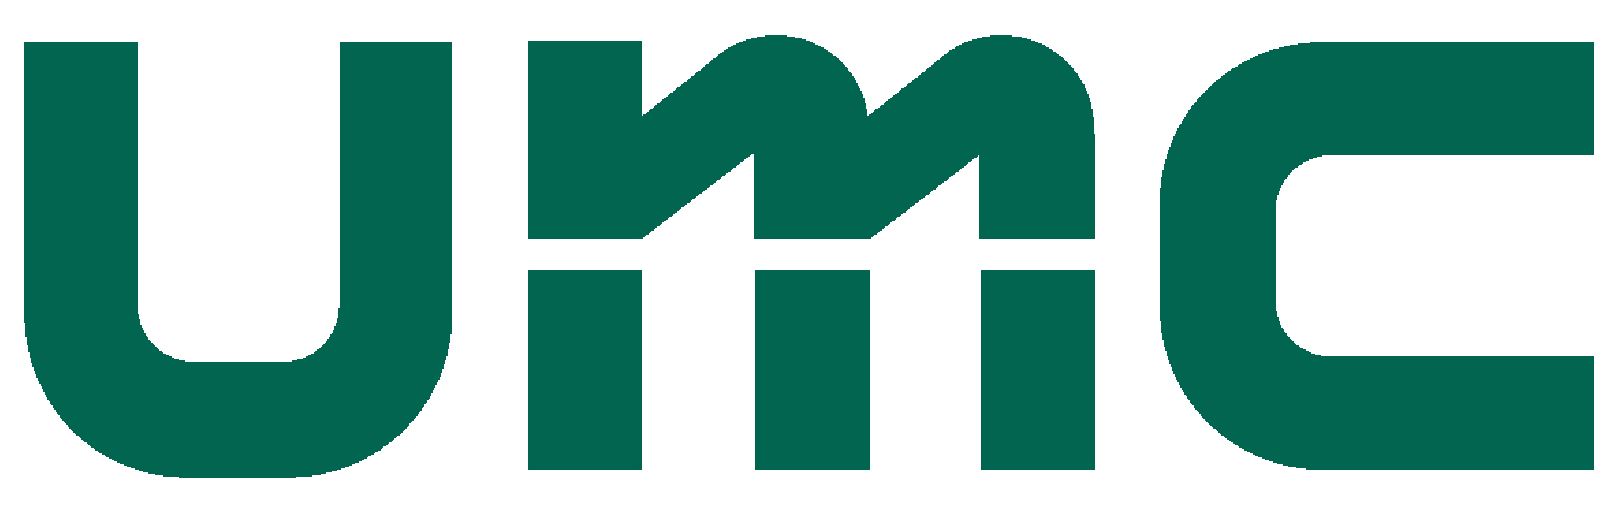 内山工業株式会社のロゴ